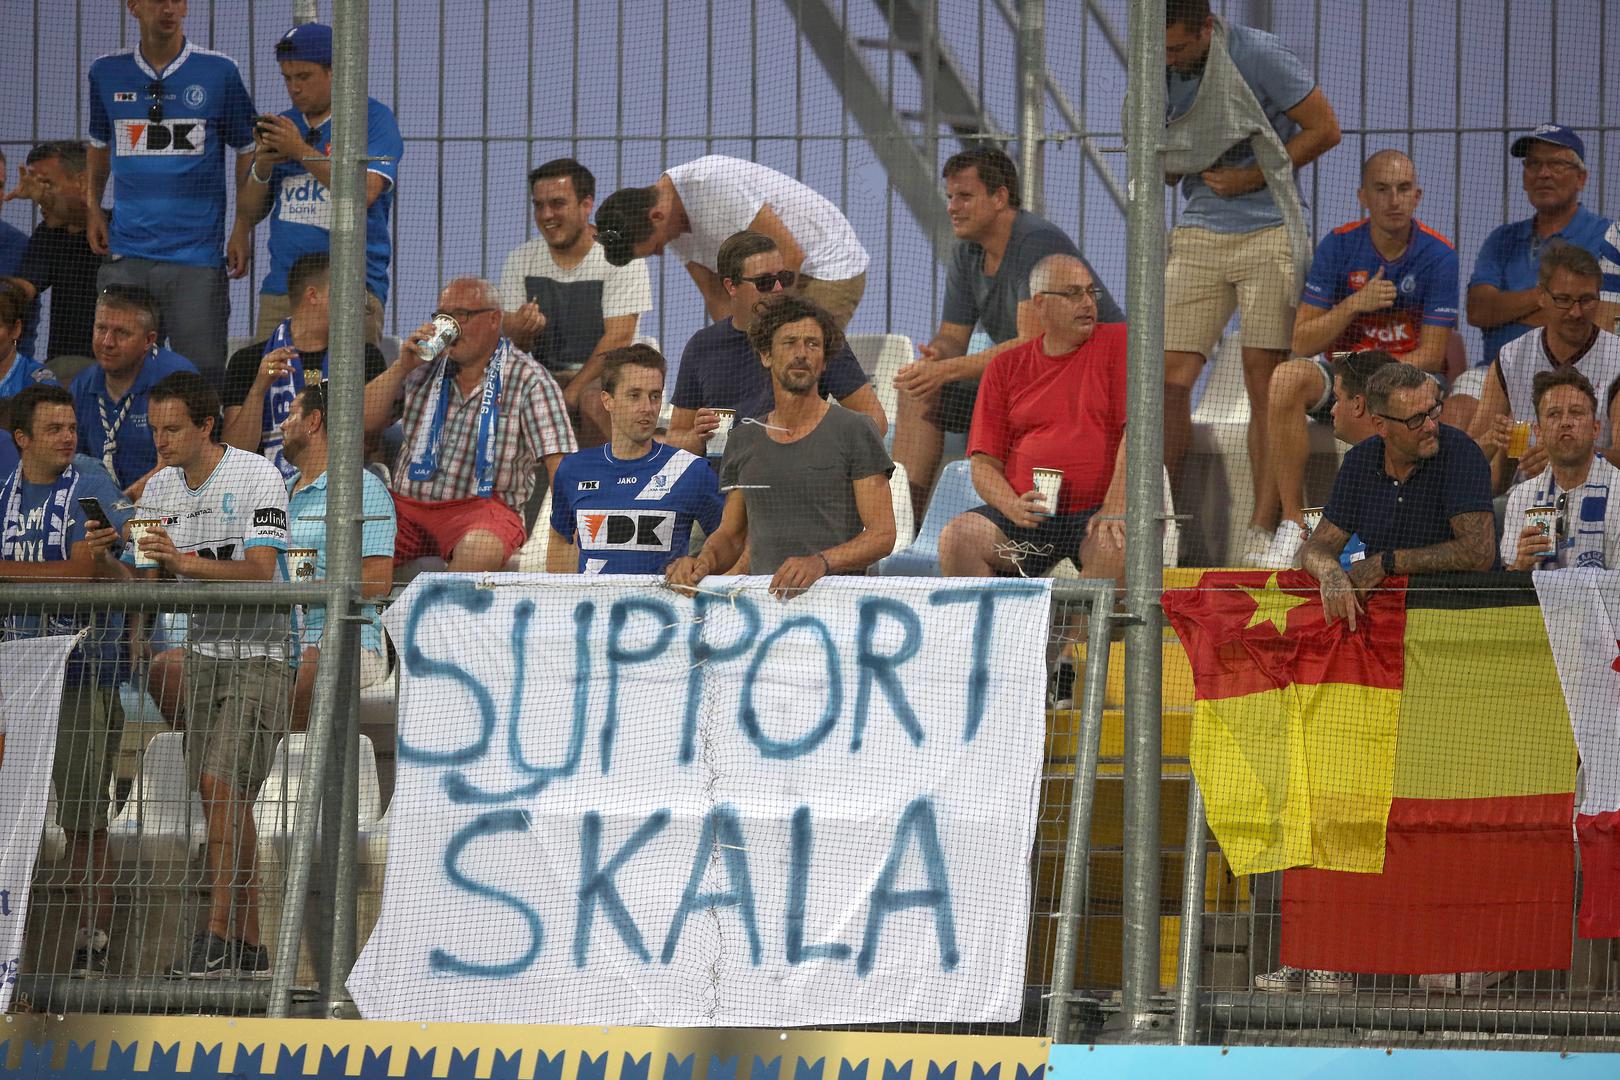 Škalameri su podršku pružili i navijači Genta na tribinama Rujevice uz transparent 'Support Škala' (Podrška Škali).